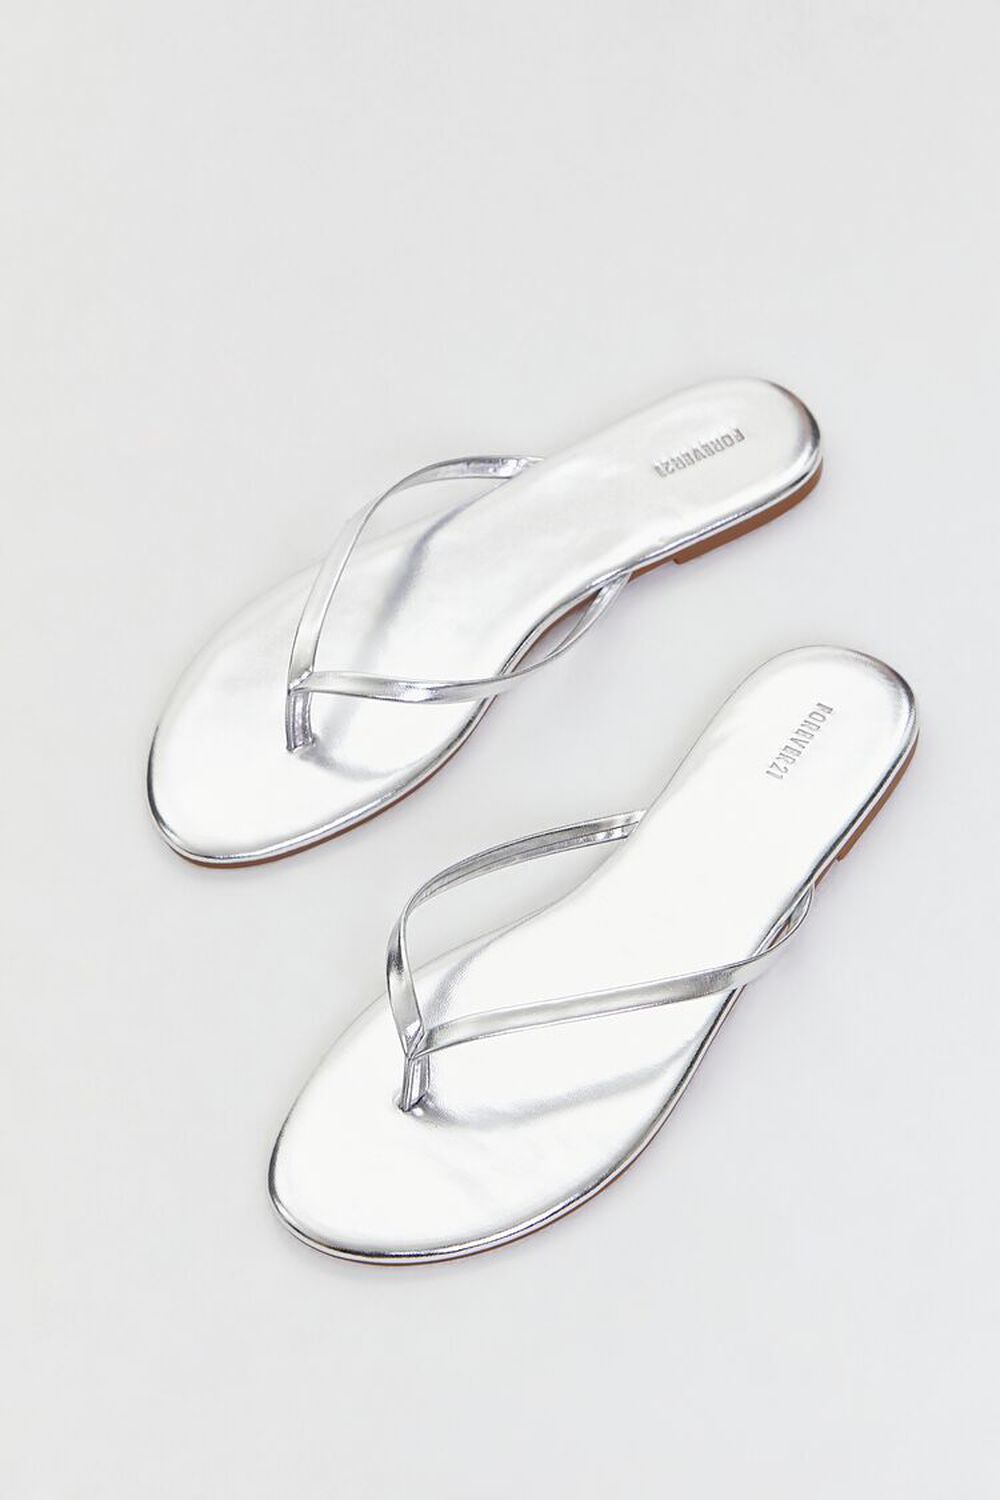 SILVER Metallic Thong Sandals, image 1